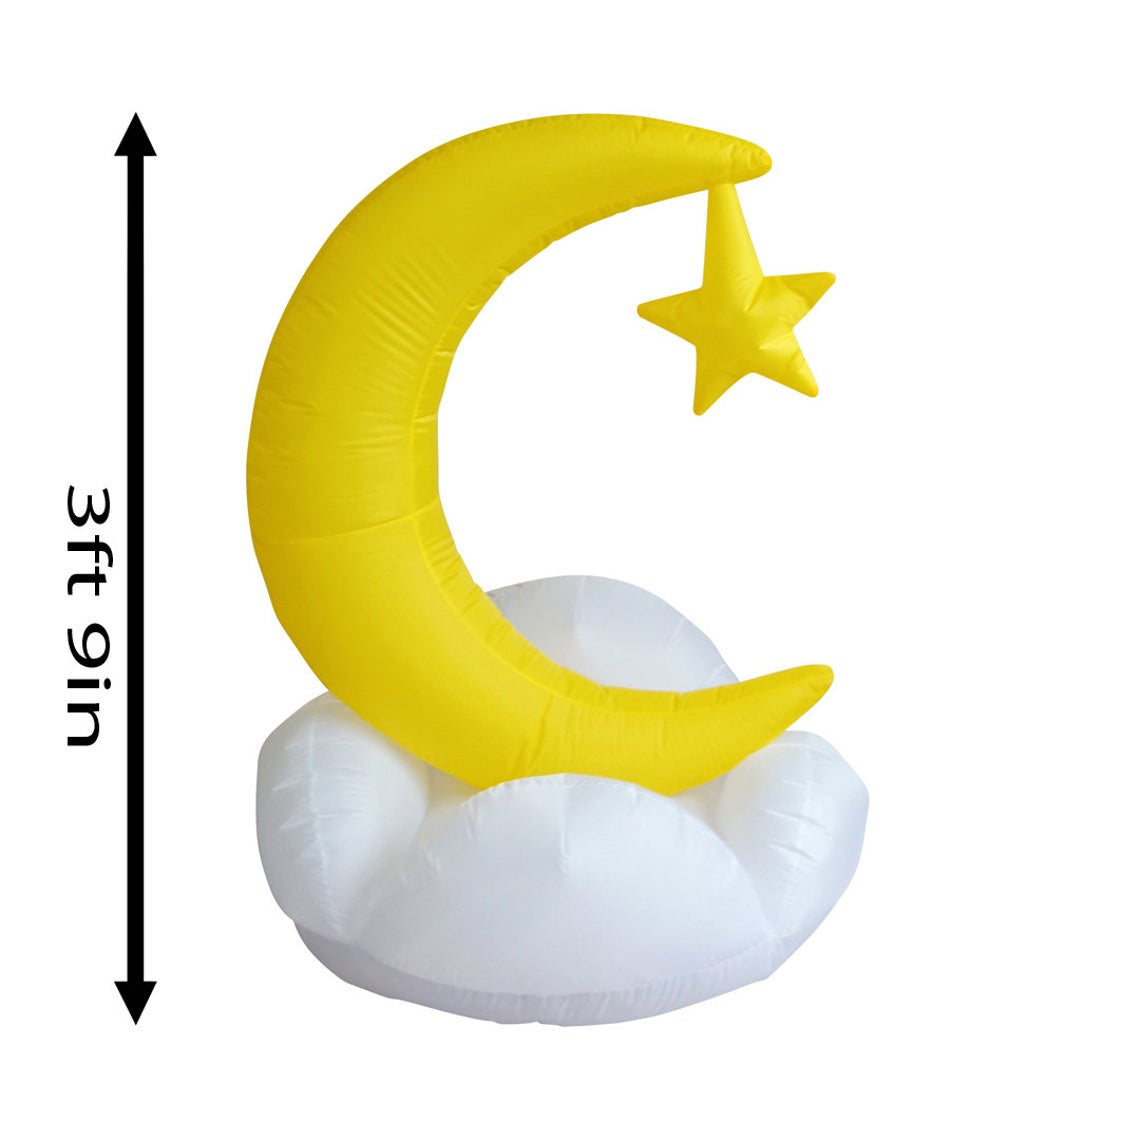 Ramadan Moon Inflatable Decor